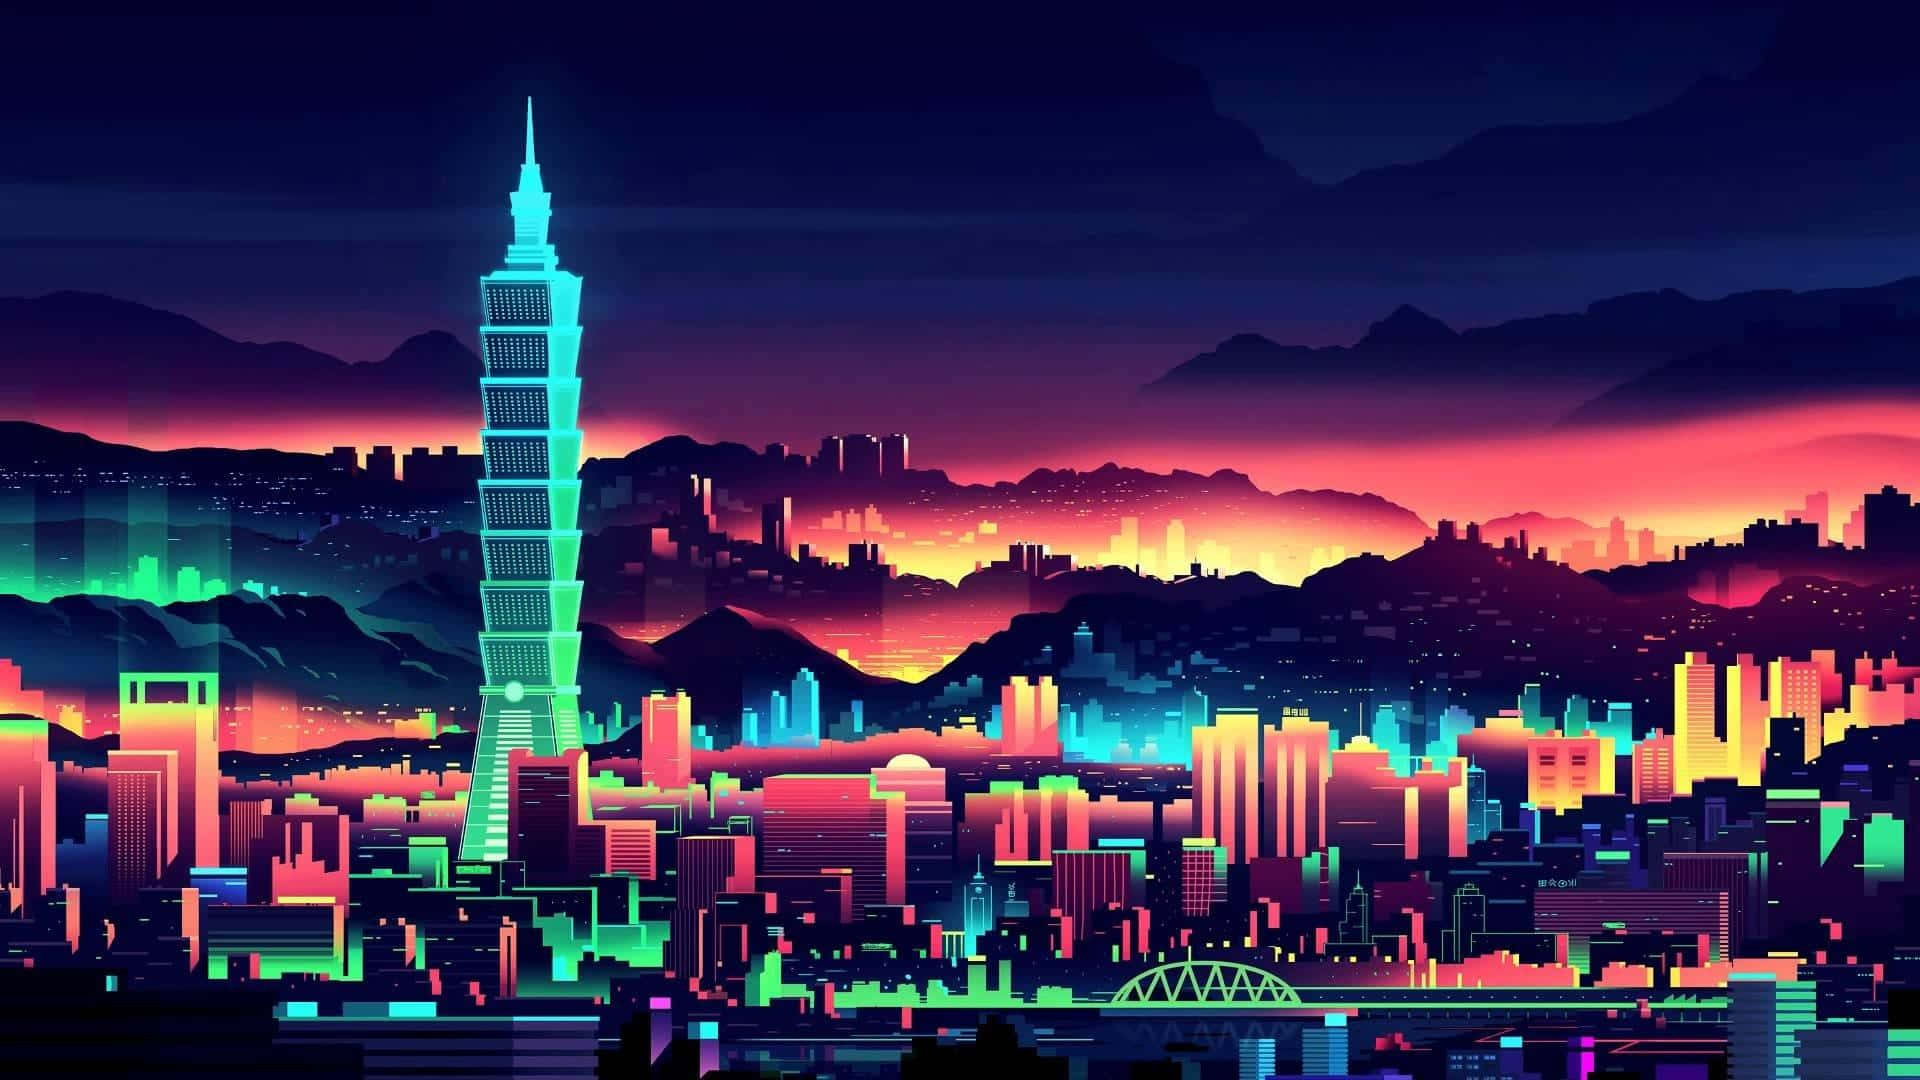 An illuminated futuristic cityscape